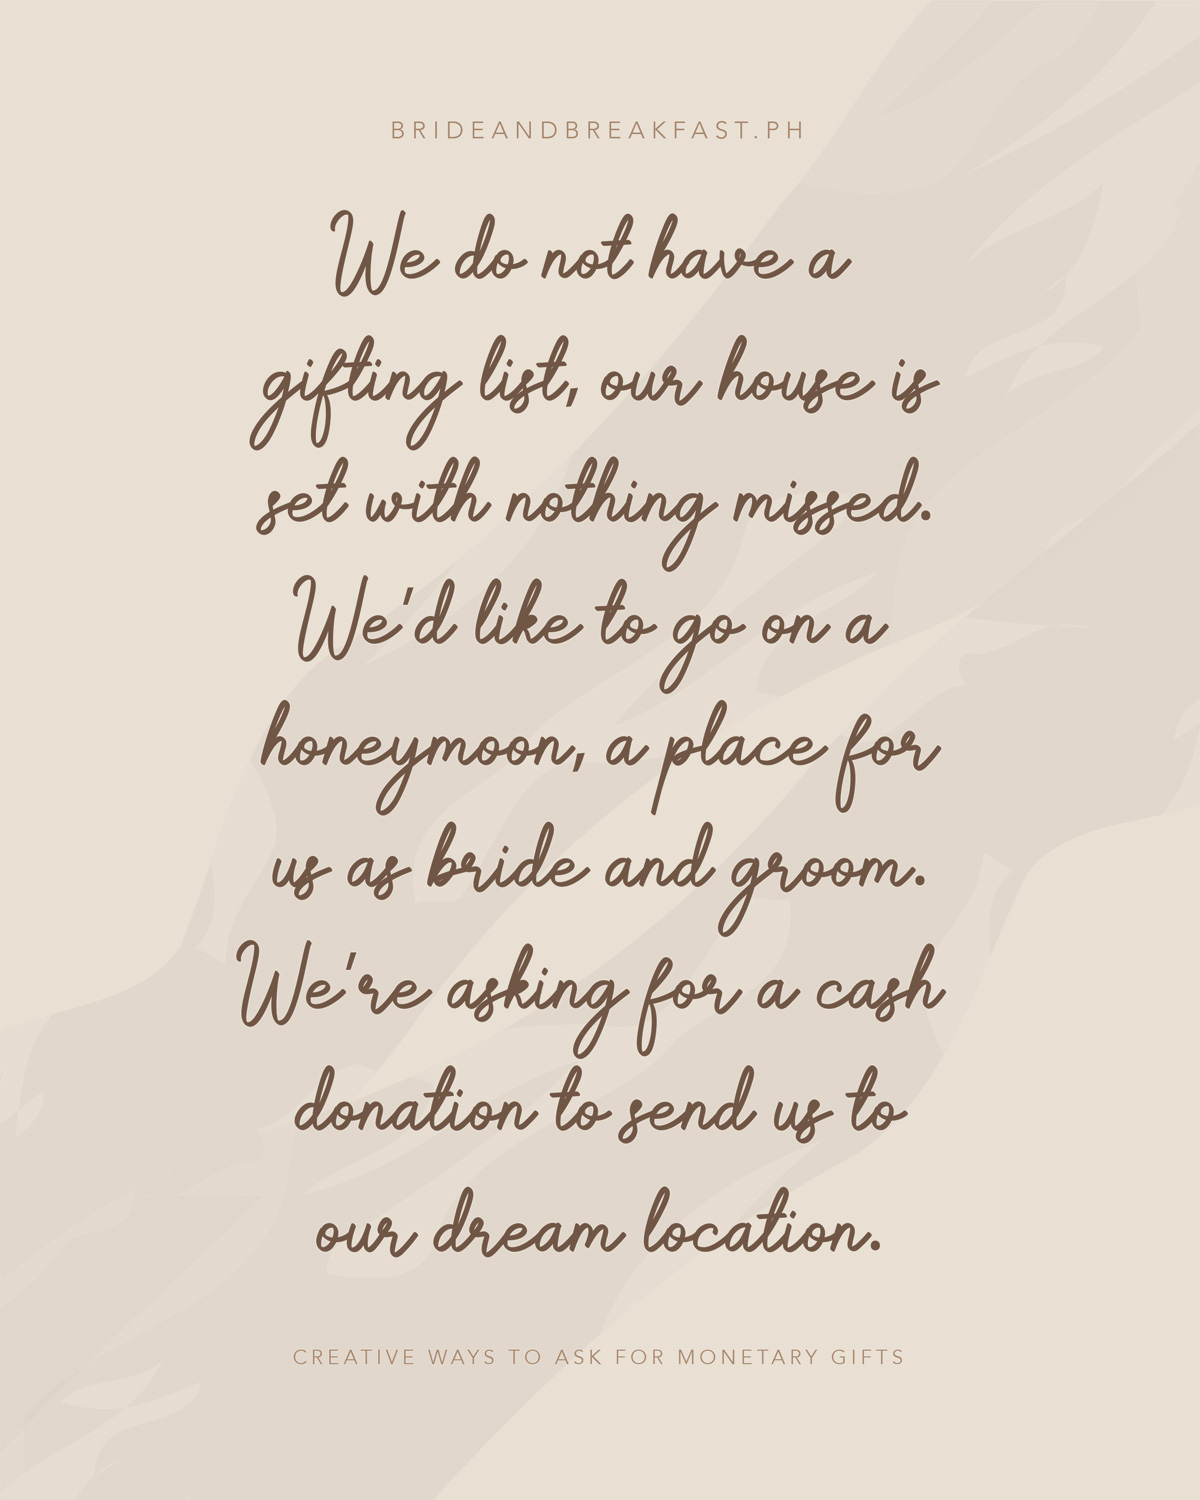 não temos uma lista de presentes, nossa casa está definida com nada perdido. Gostaríamos de ir em lua de mel um lugar para nós como noiva e noivo. Estamos pedindo uma doação em dinheiro para nos enviar para o local dos nossos sonhos.